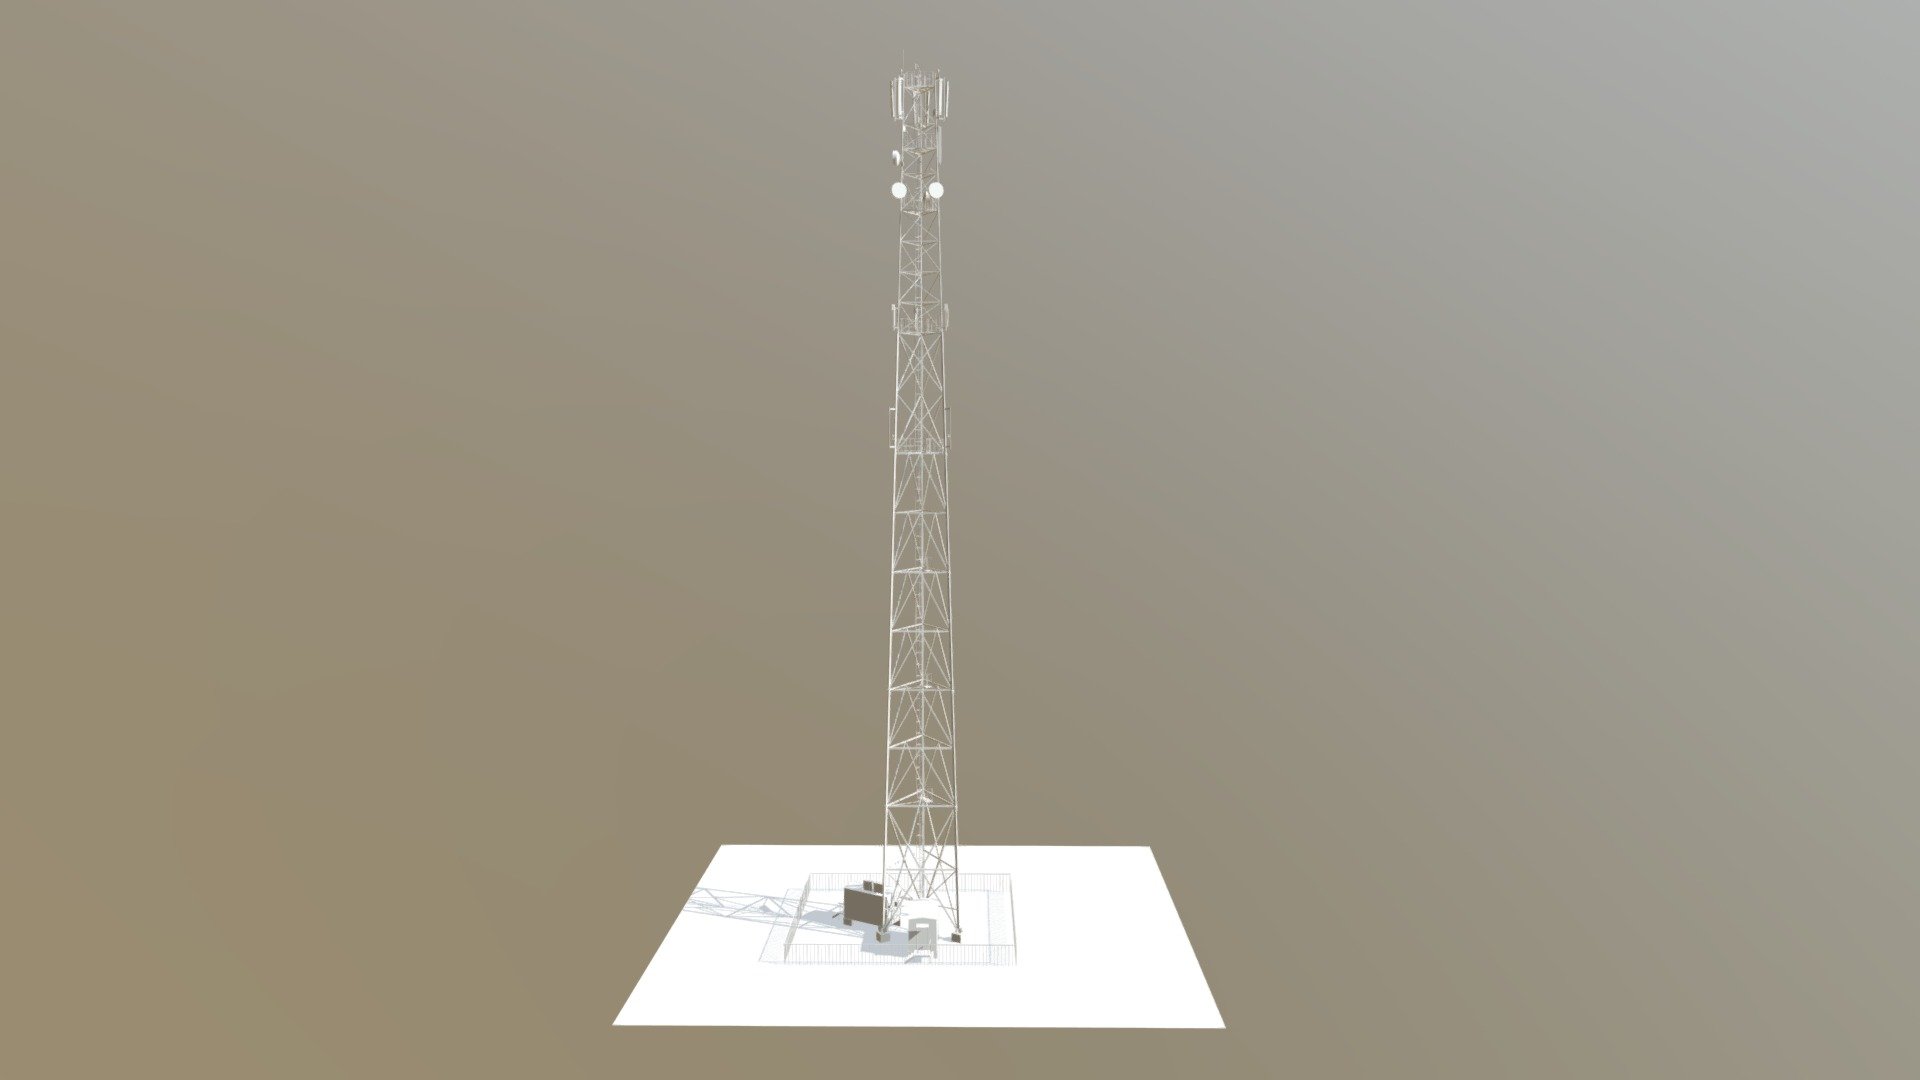 Cellular base station on the tower 72 m - Cellular base station on the tower 72 m - 3D model by ihar.valasatau 3d model